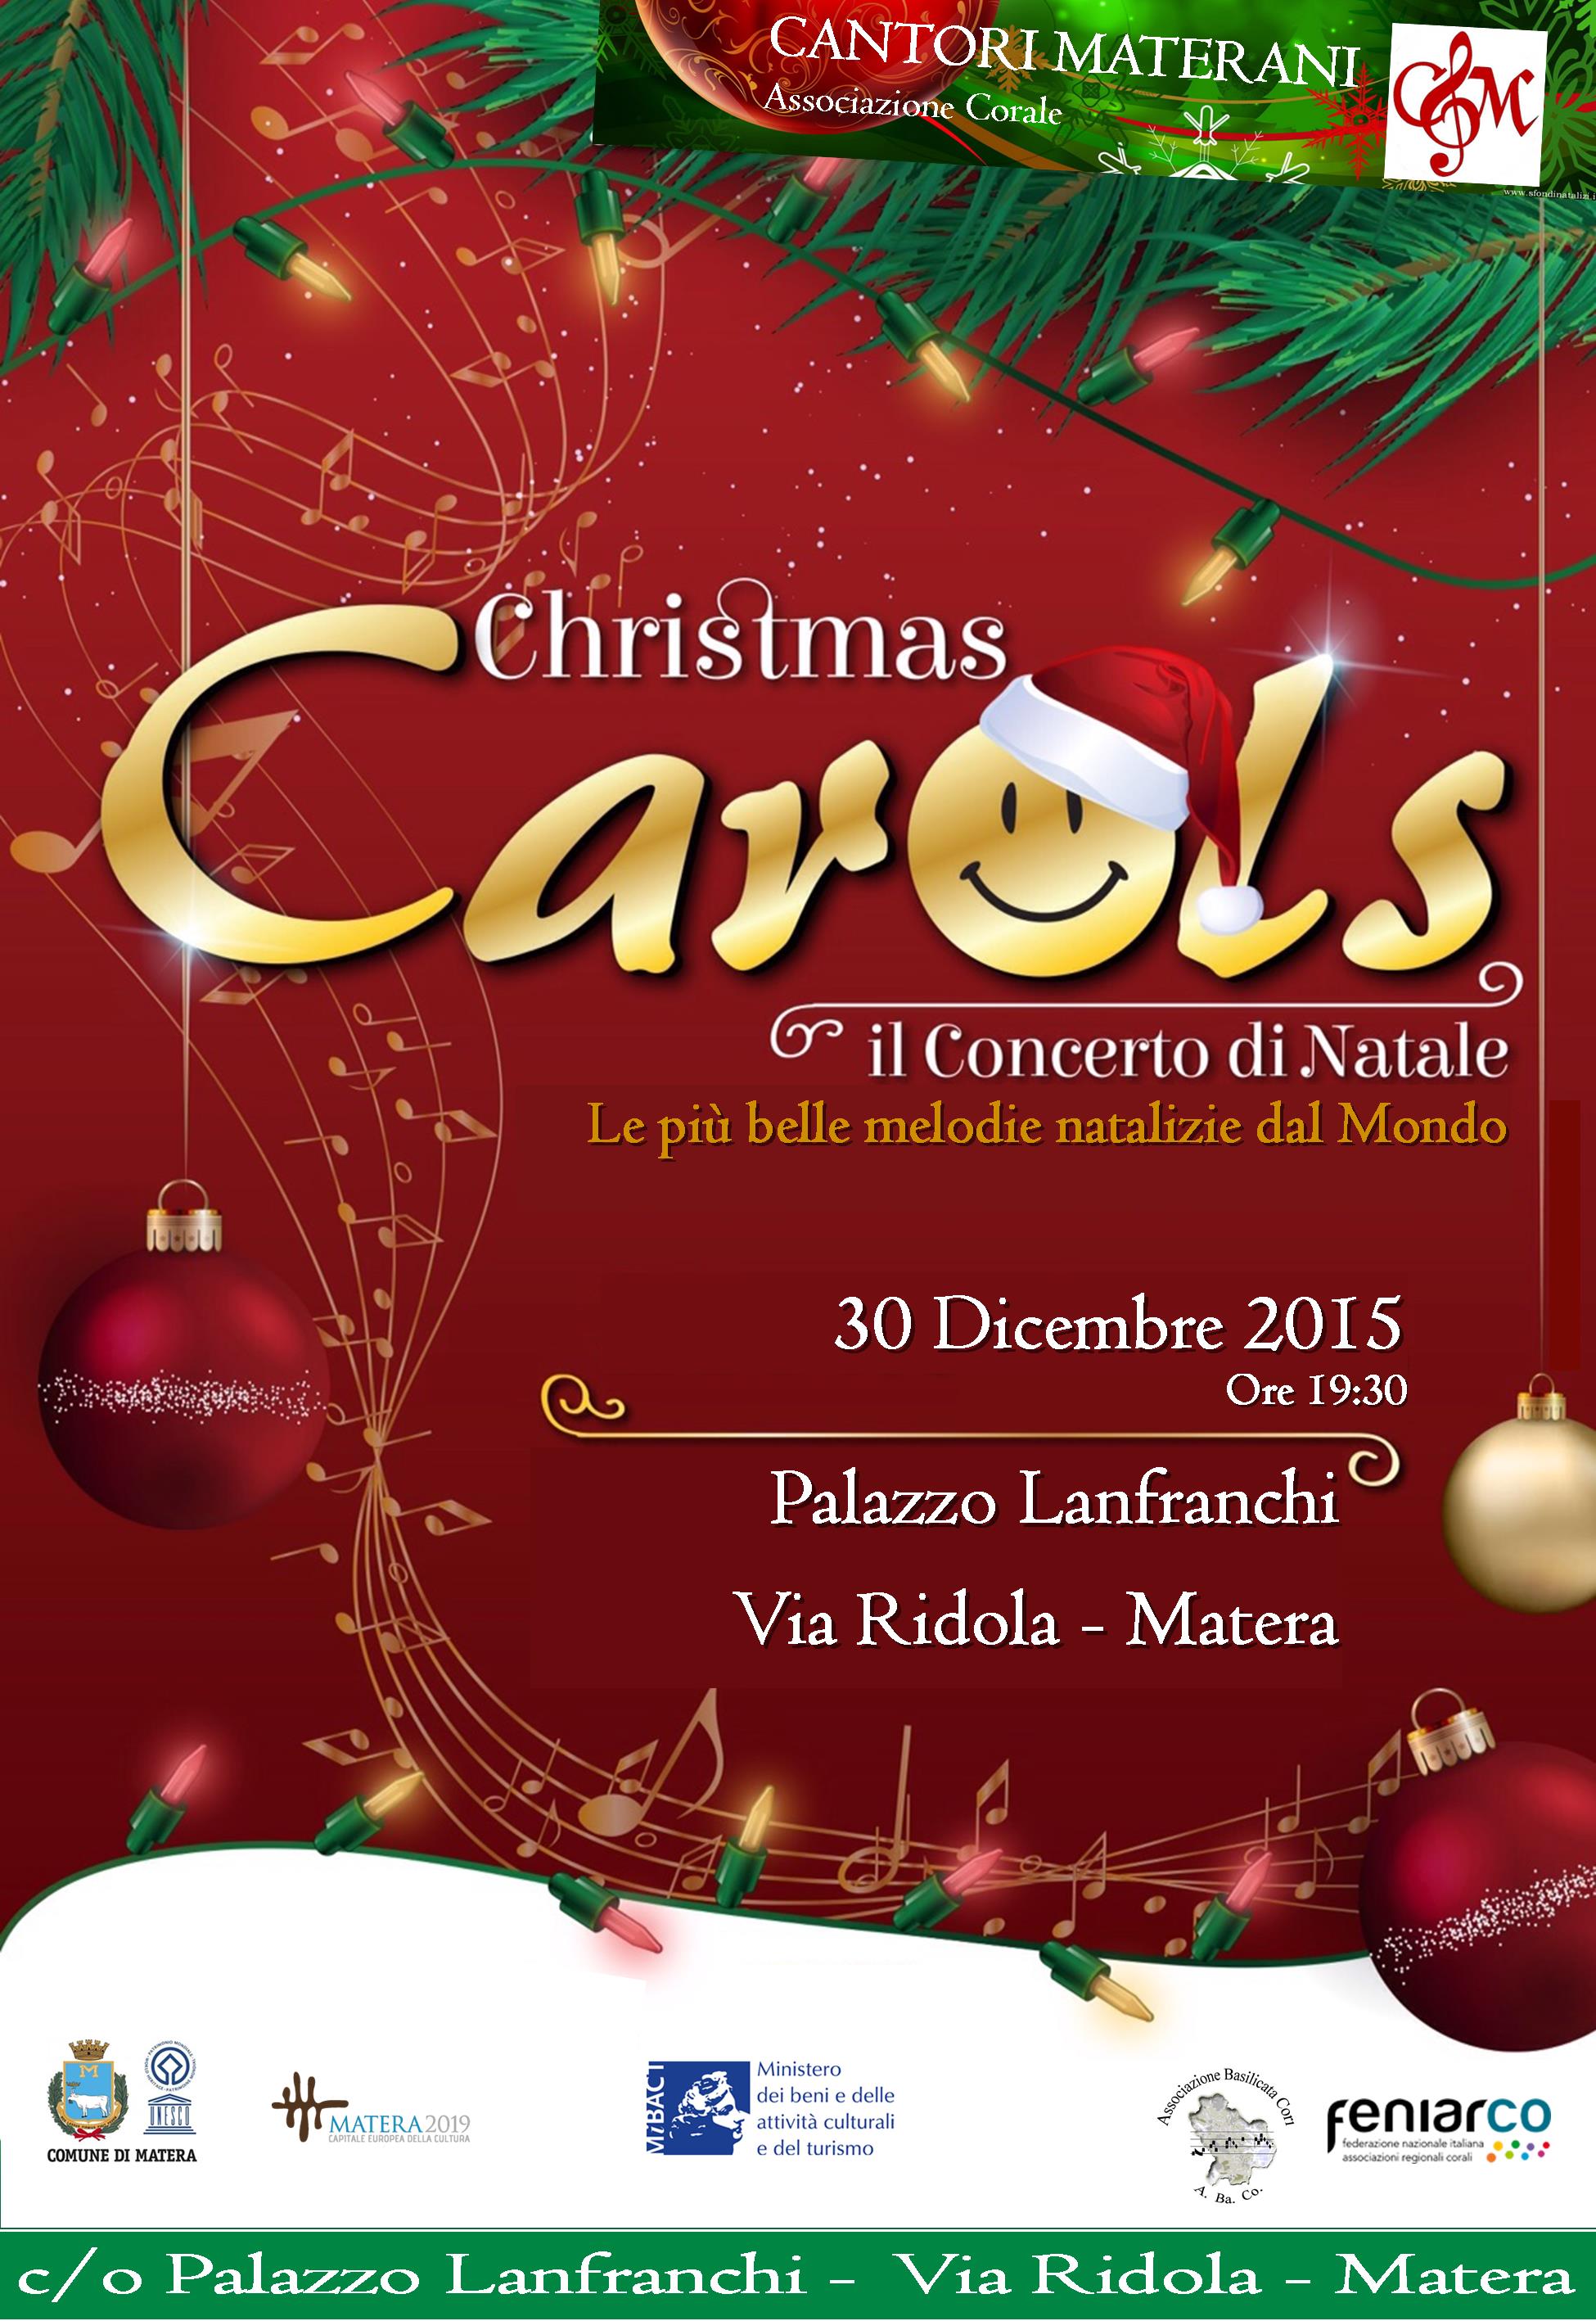 Christmas carols - Il Concerto di Natale